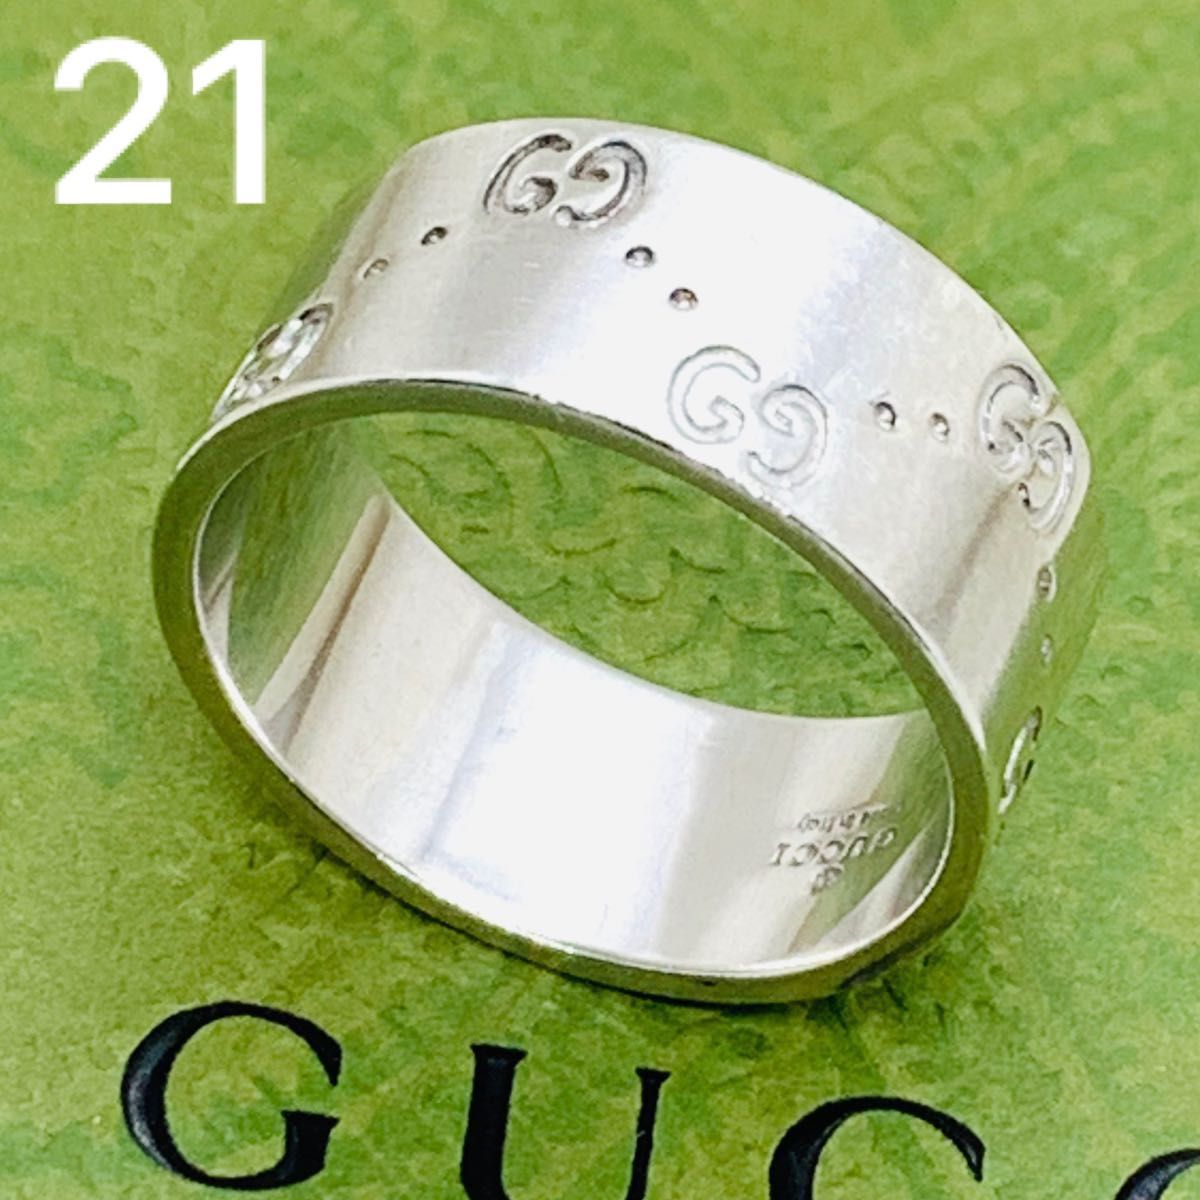 GUCCI グッチ アイコン k18 750 gg ダブルg リング 指輪 20号 サイズ 21 フルデザイン ワイド Yahoo!フリマ（旧）のサムネイル